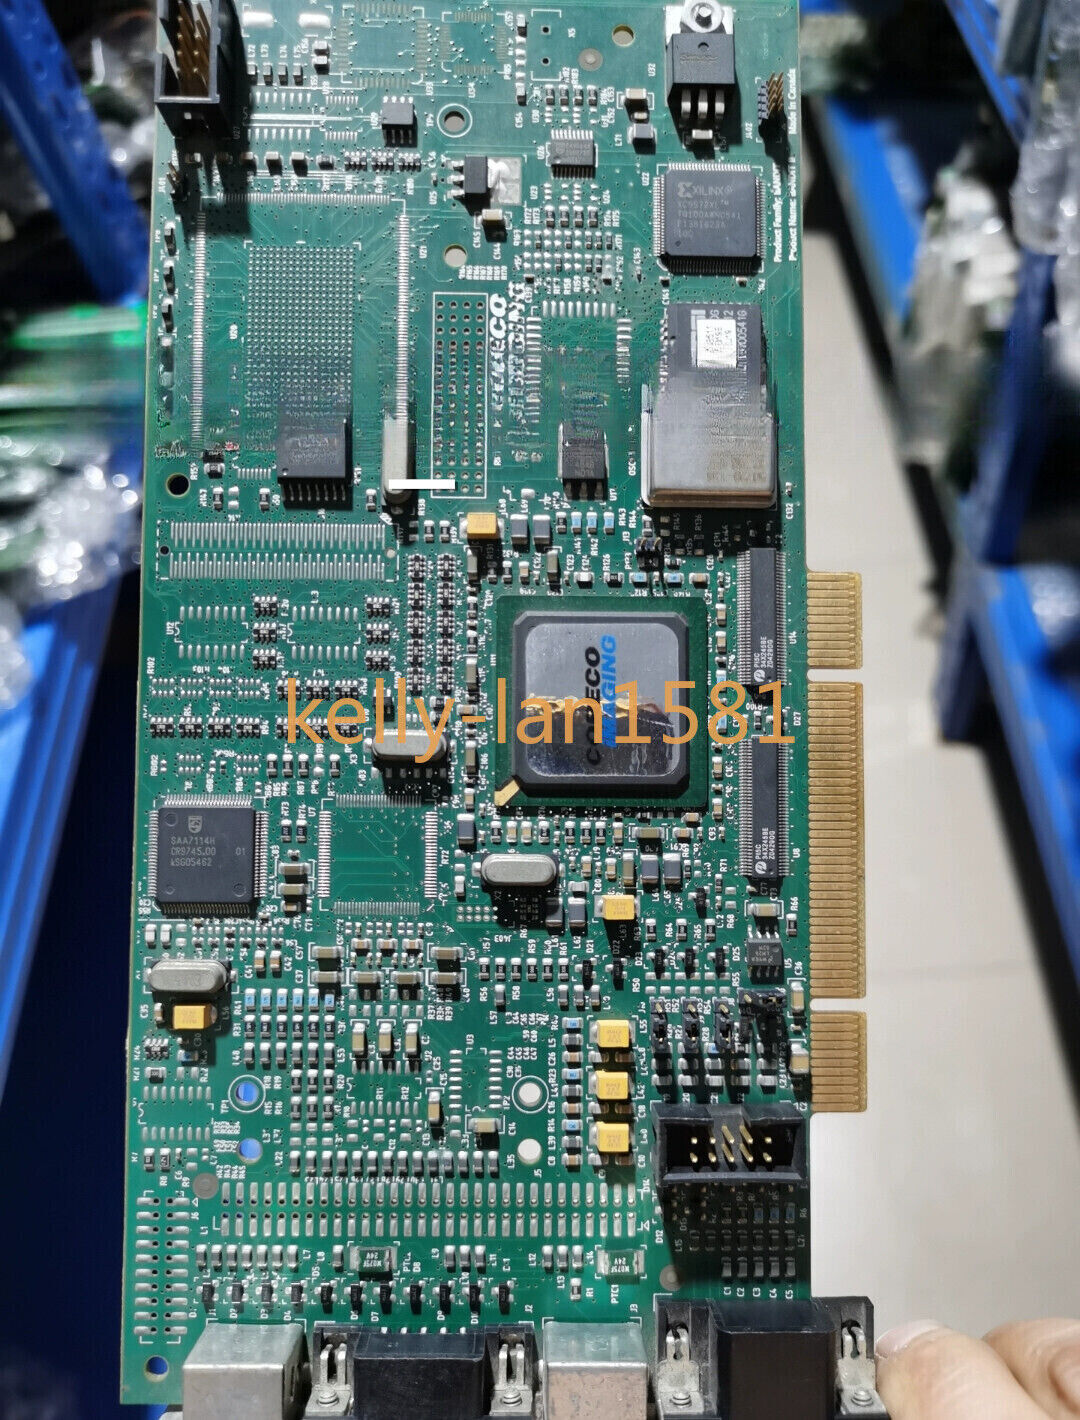 100% Test 1PC USED OC-B2P0-CV000 PCI Board Frame Grabber Card (DHL/Fedex